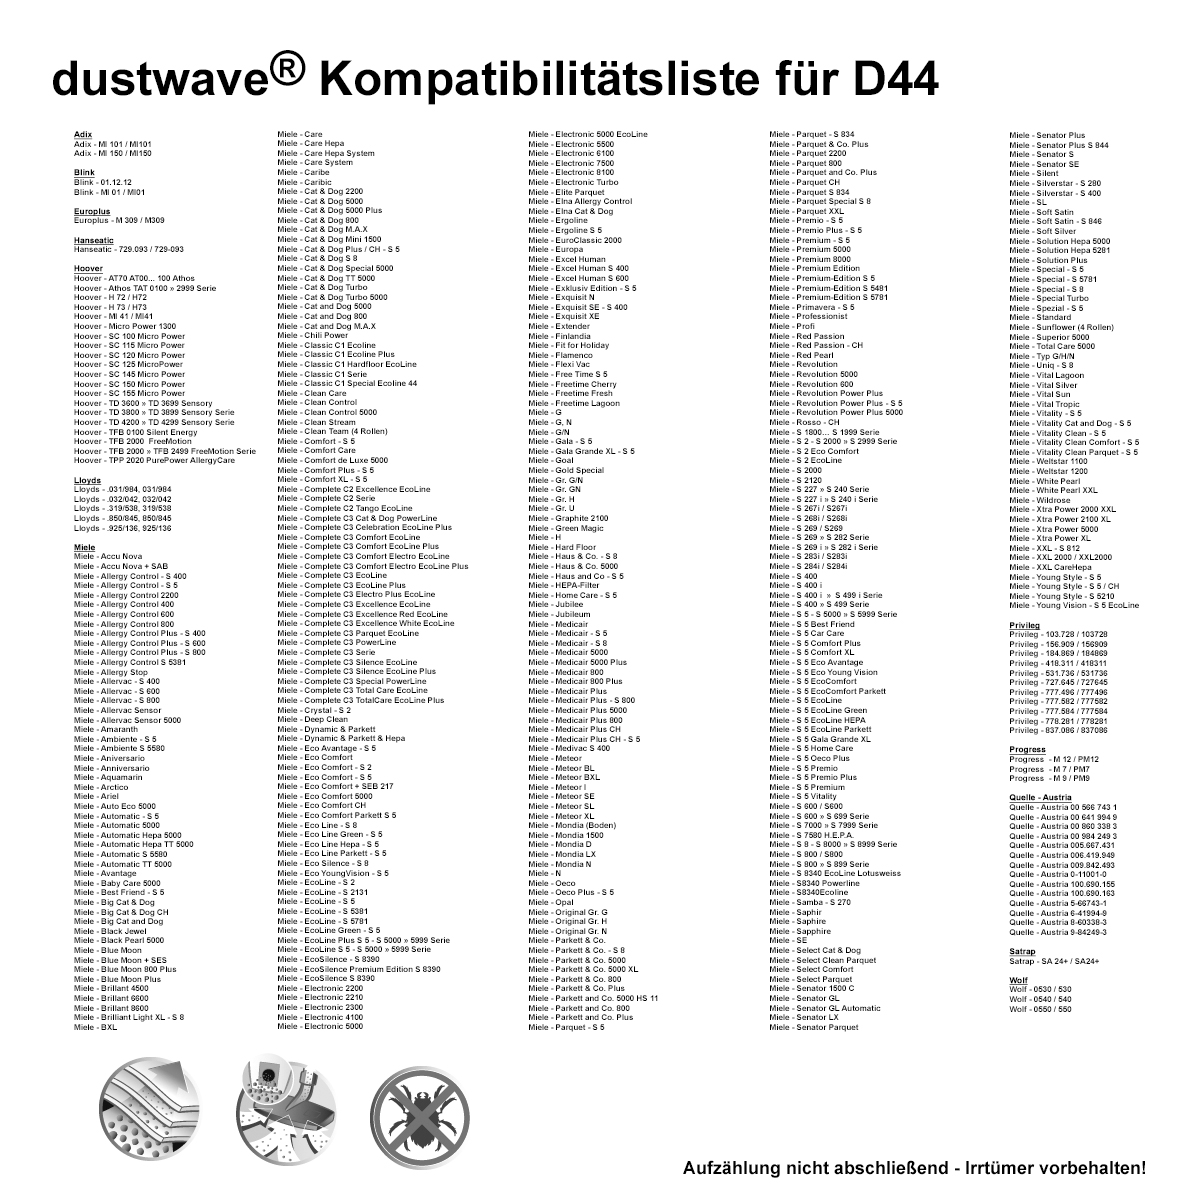 Dustwave® 5 Staubsaugerbeutel für Miele S636 / S 636 - hocheffizient, mehrlagiges Mikrovlies mit Hygieneverschluss - Made in Germany